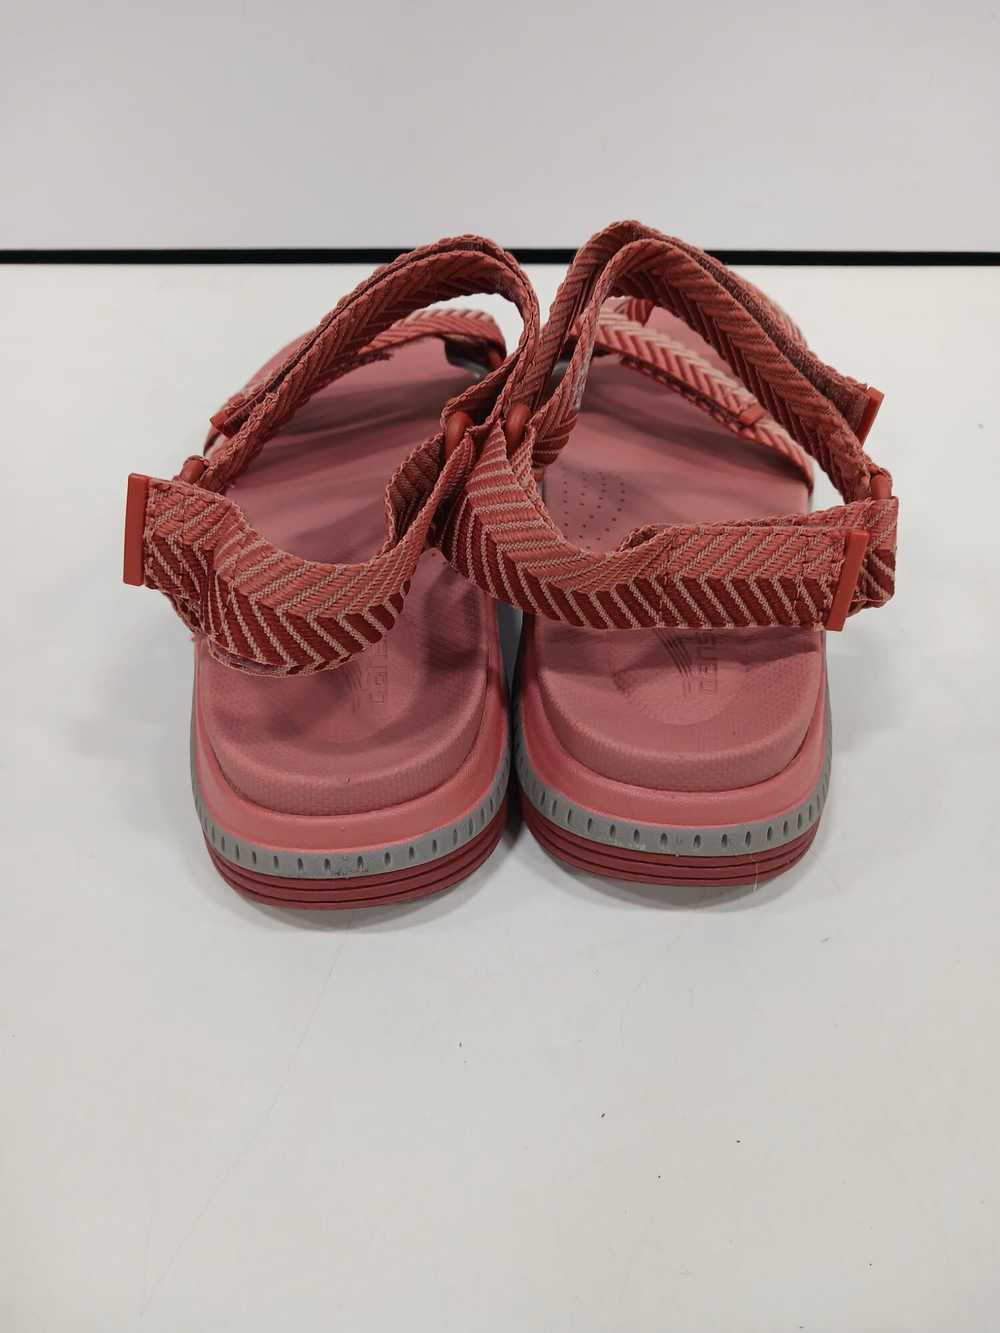 Dansko Pink Sandals Size 38 - image 5